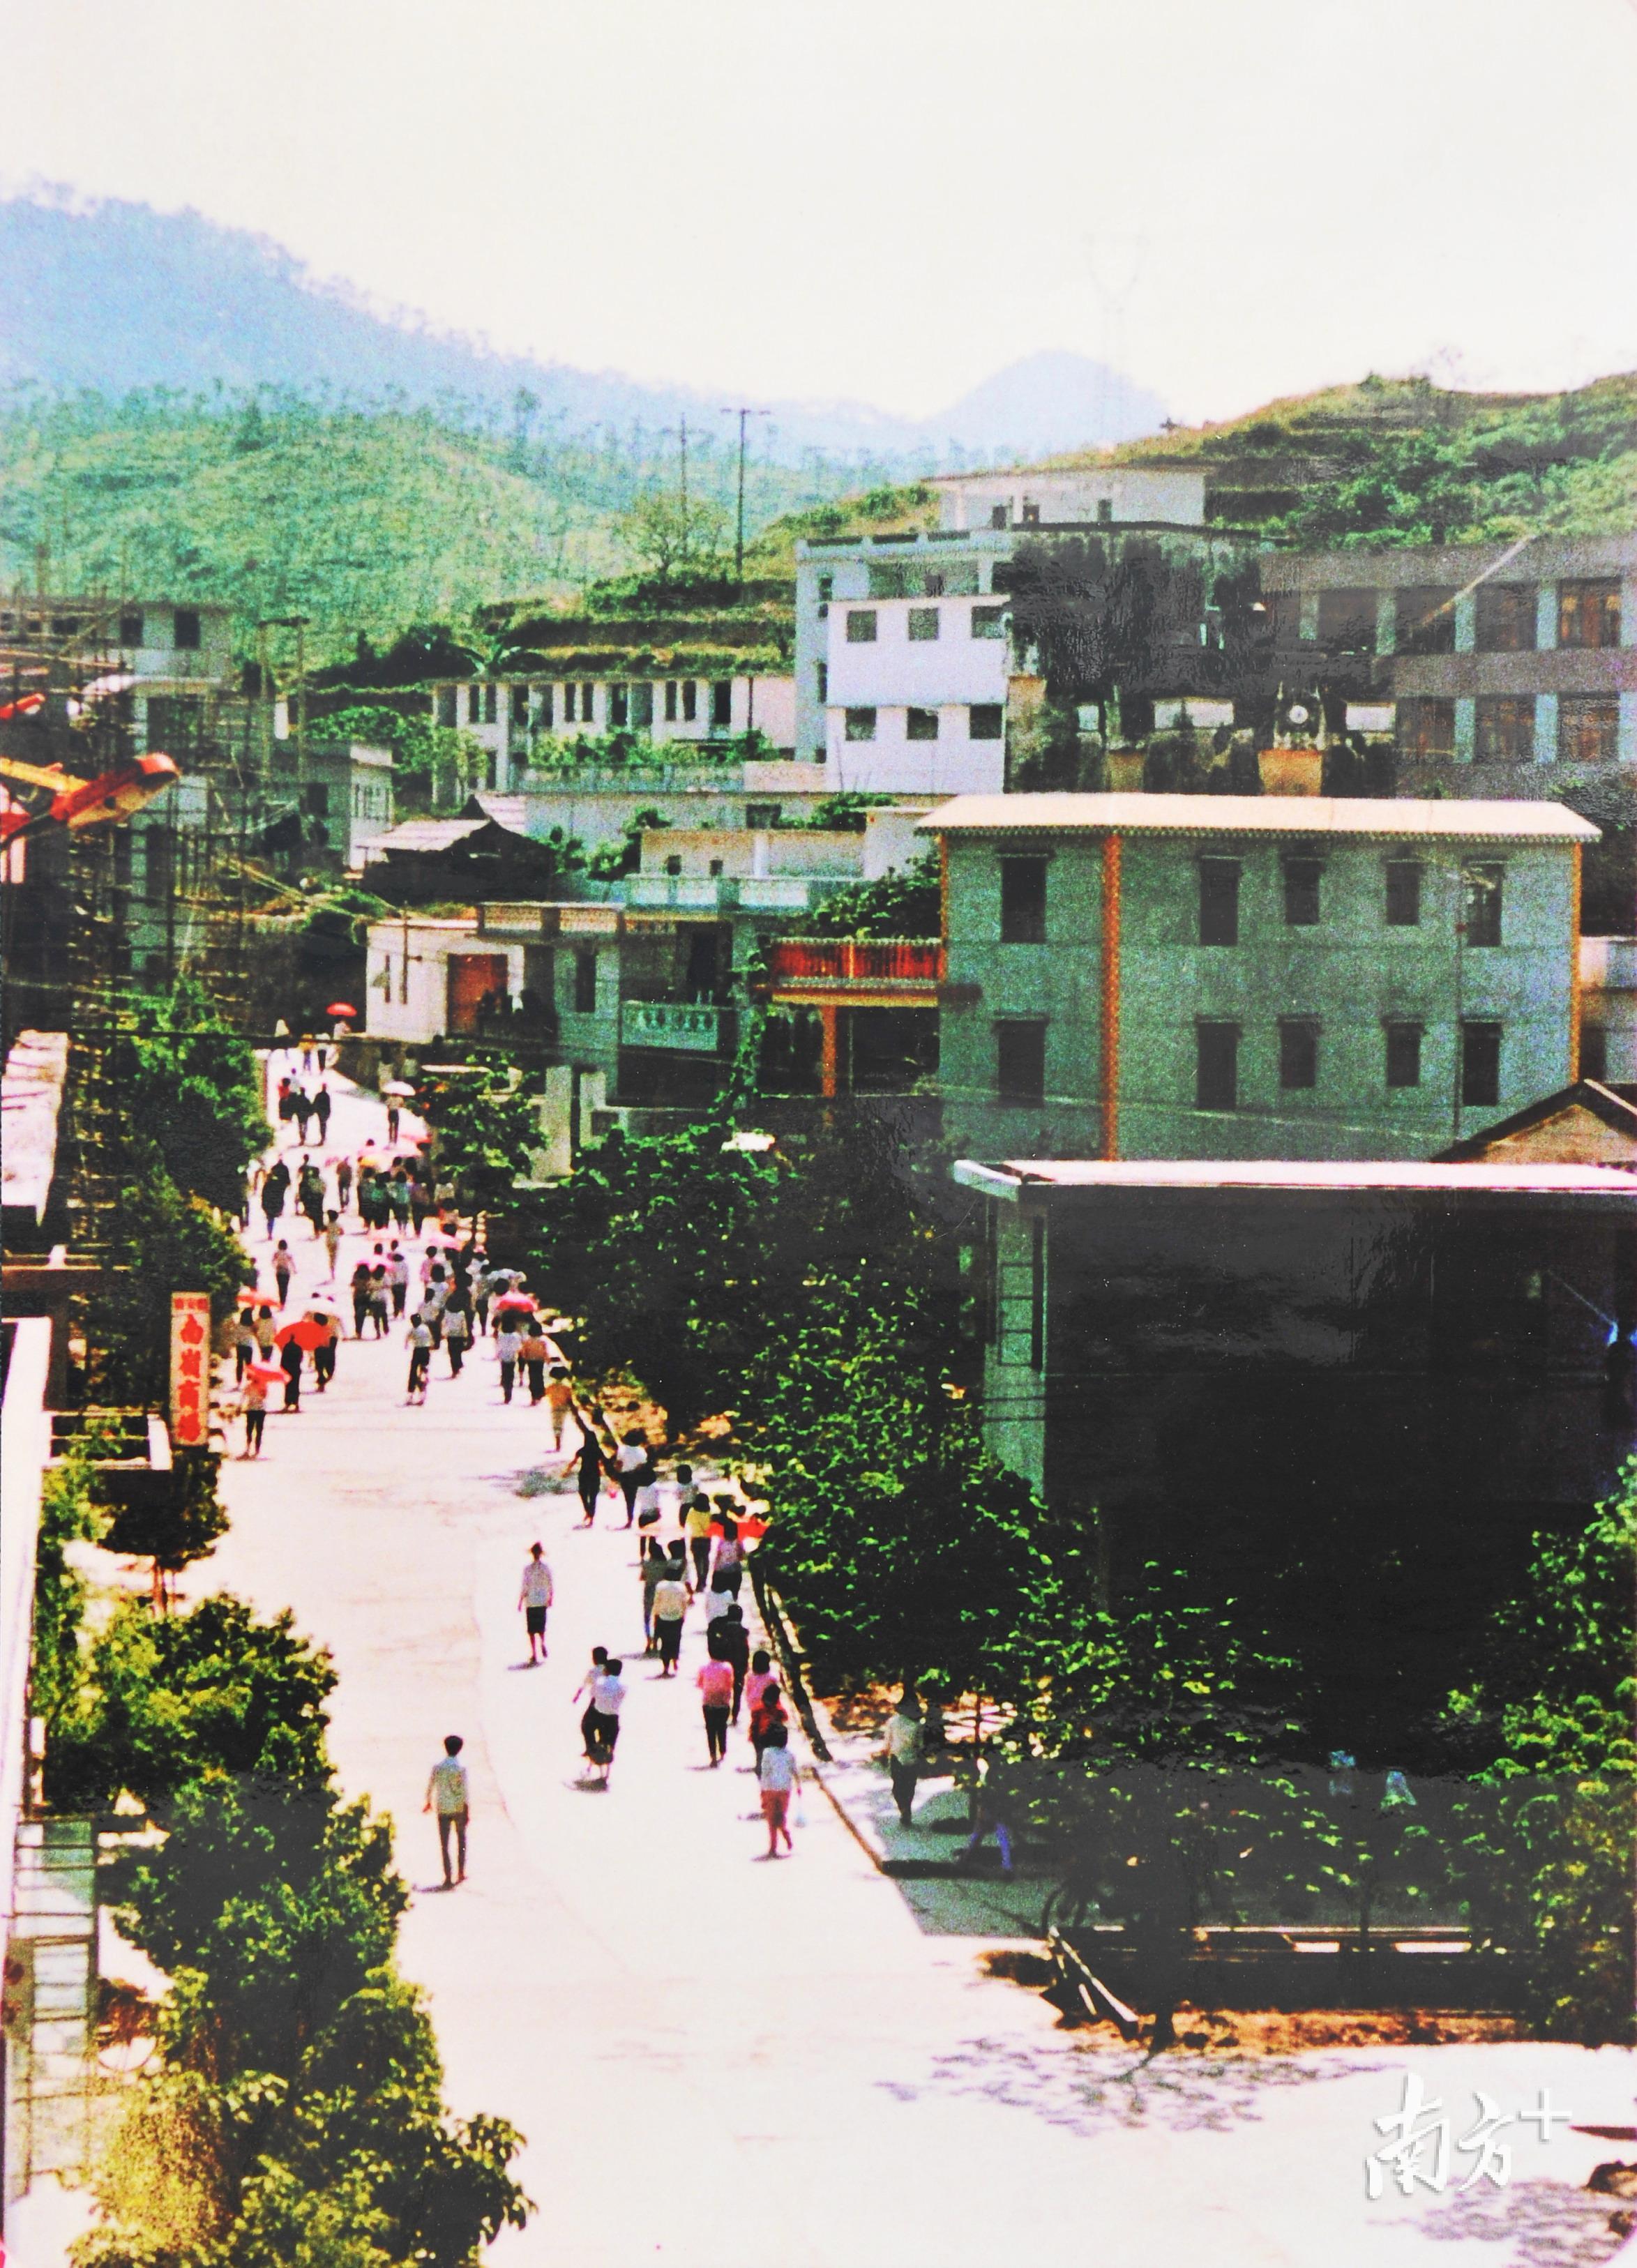 80年代初,南岭村出现了商业街